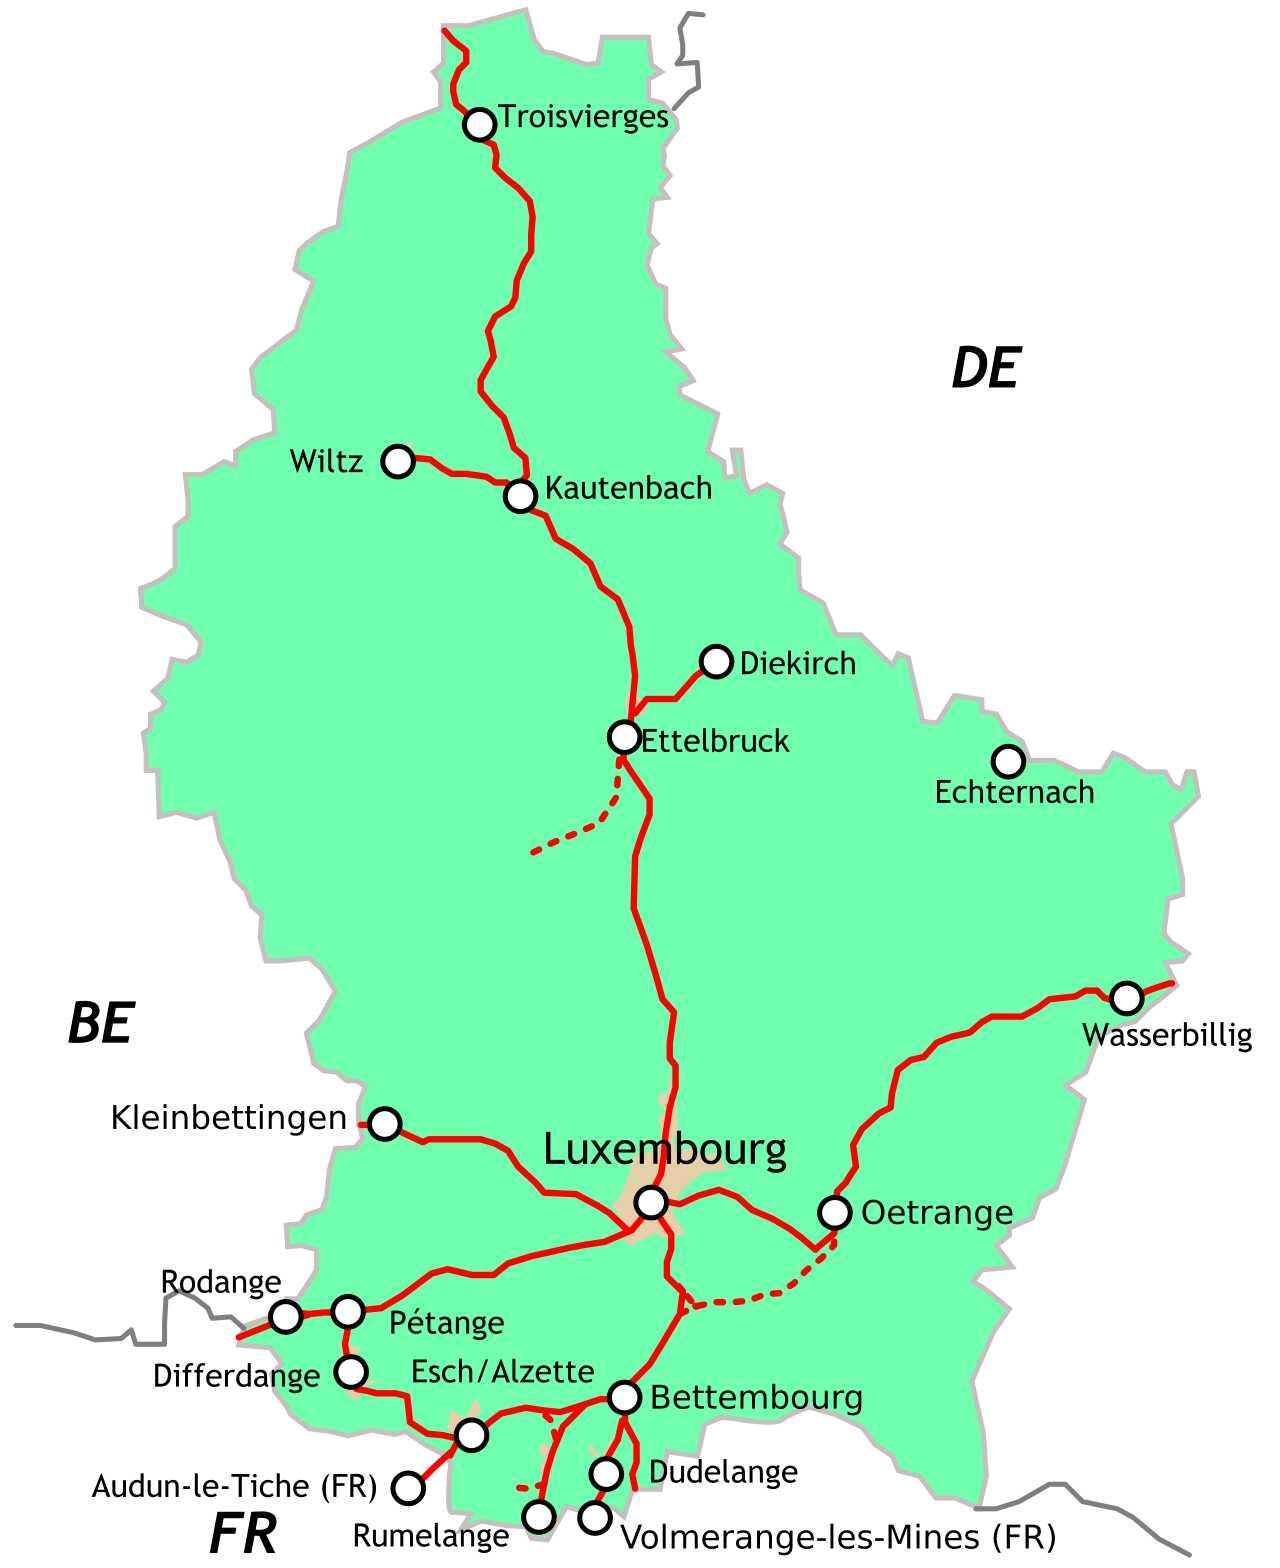 Le réseau ferré luxembourgeois compte 275 km de lignes [CC BY-SA 3.0 - CFL/Pbech/Michiel1972/Lyon-St-Clair]